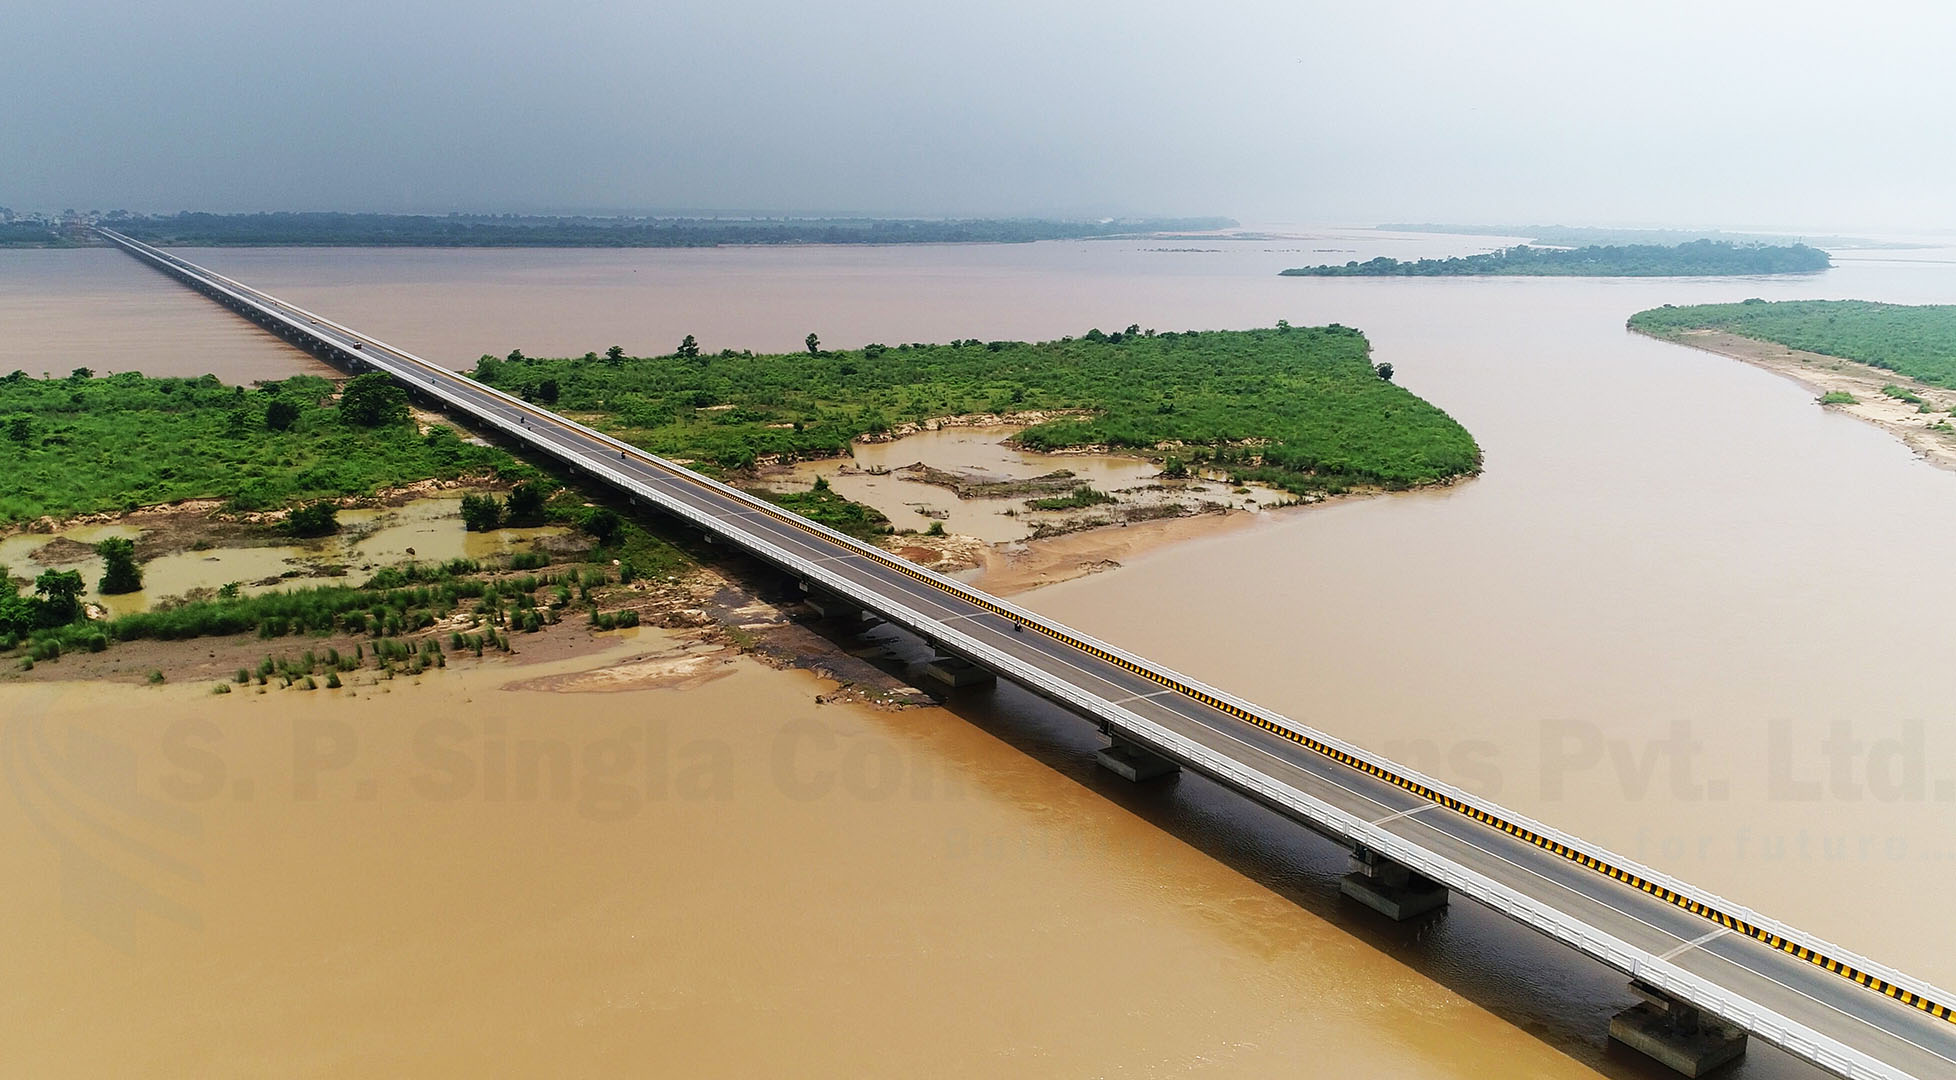 2.58 Km Long High level bridge over river Mahanadi near Cuttack in Odisha state